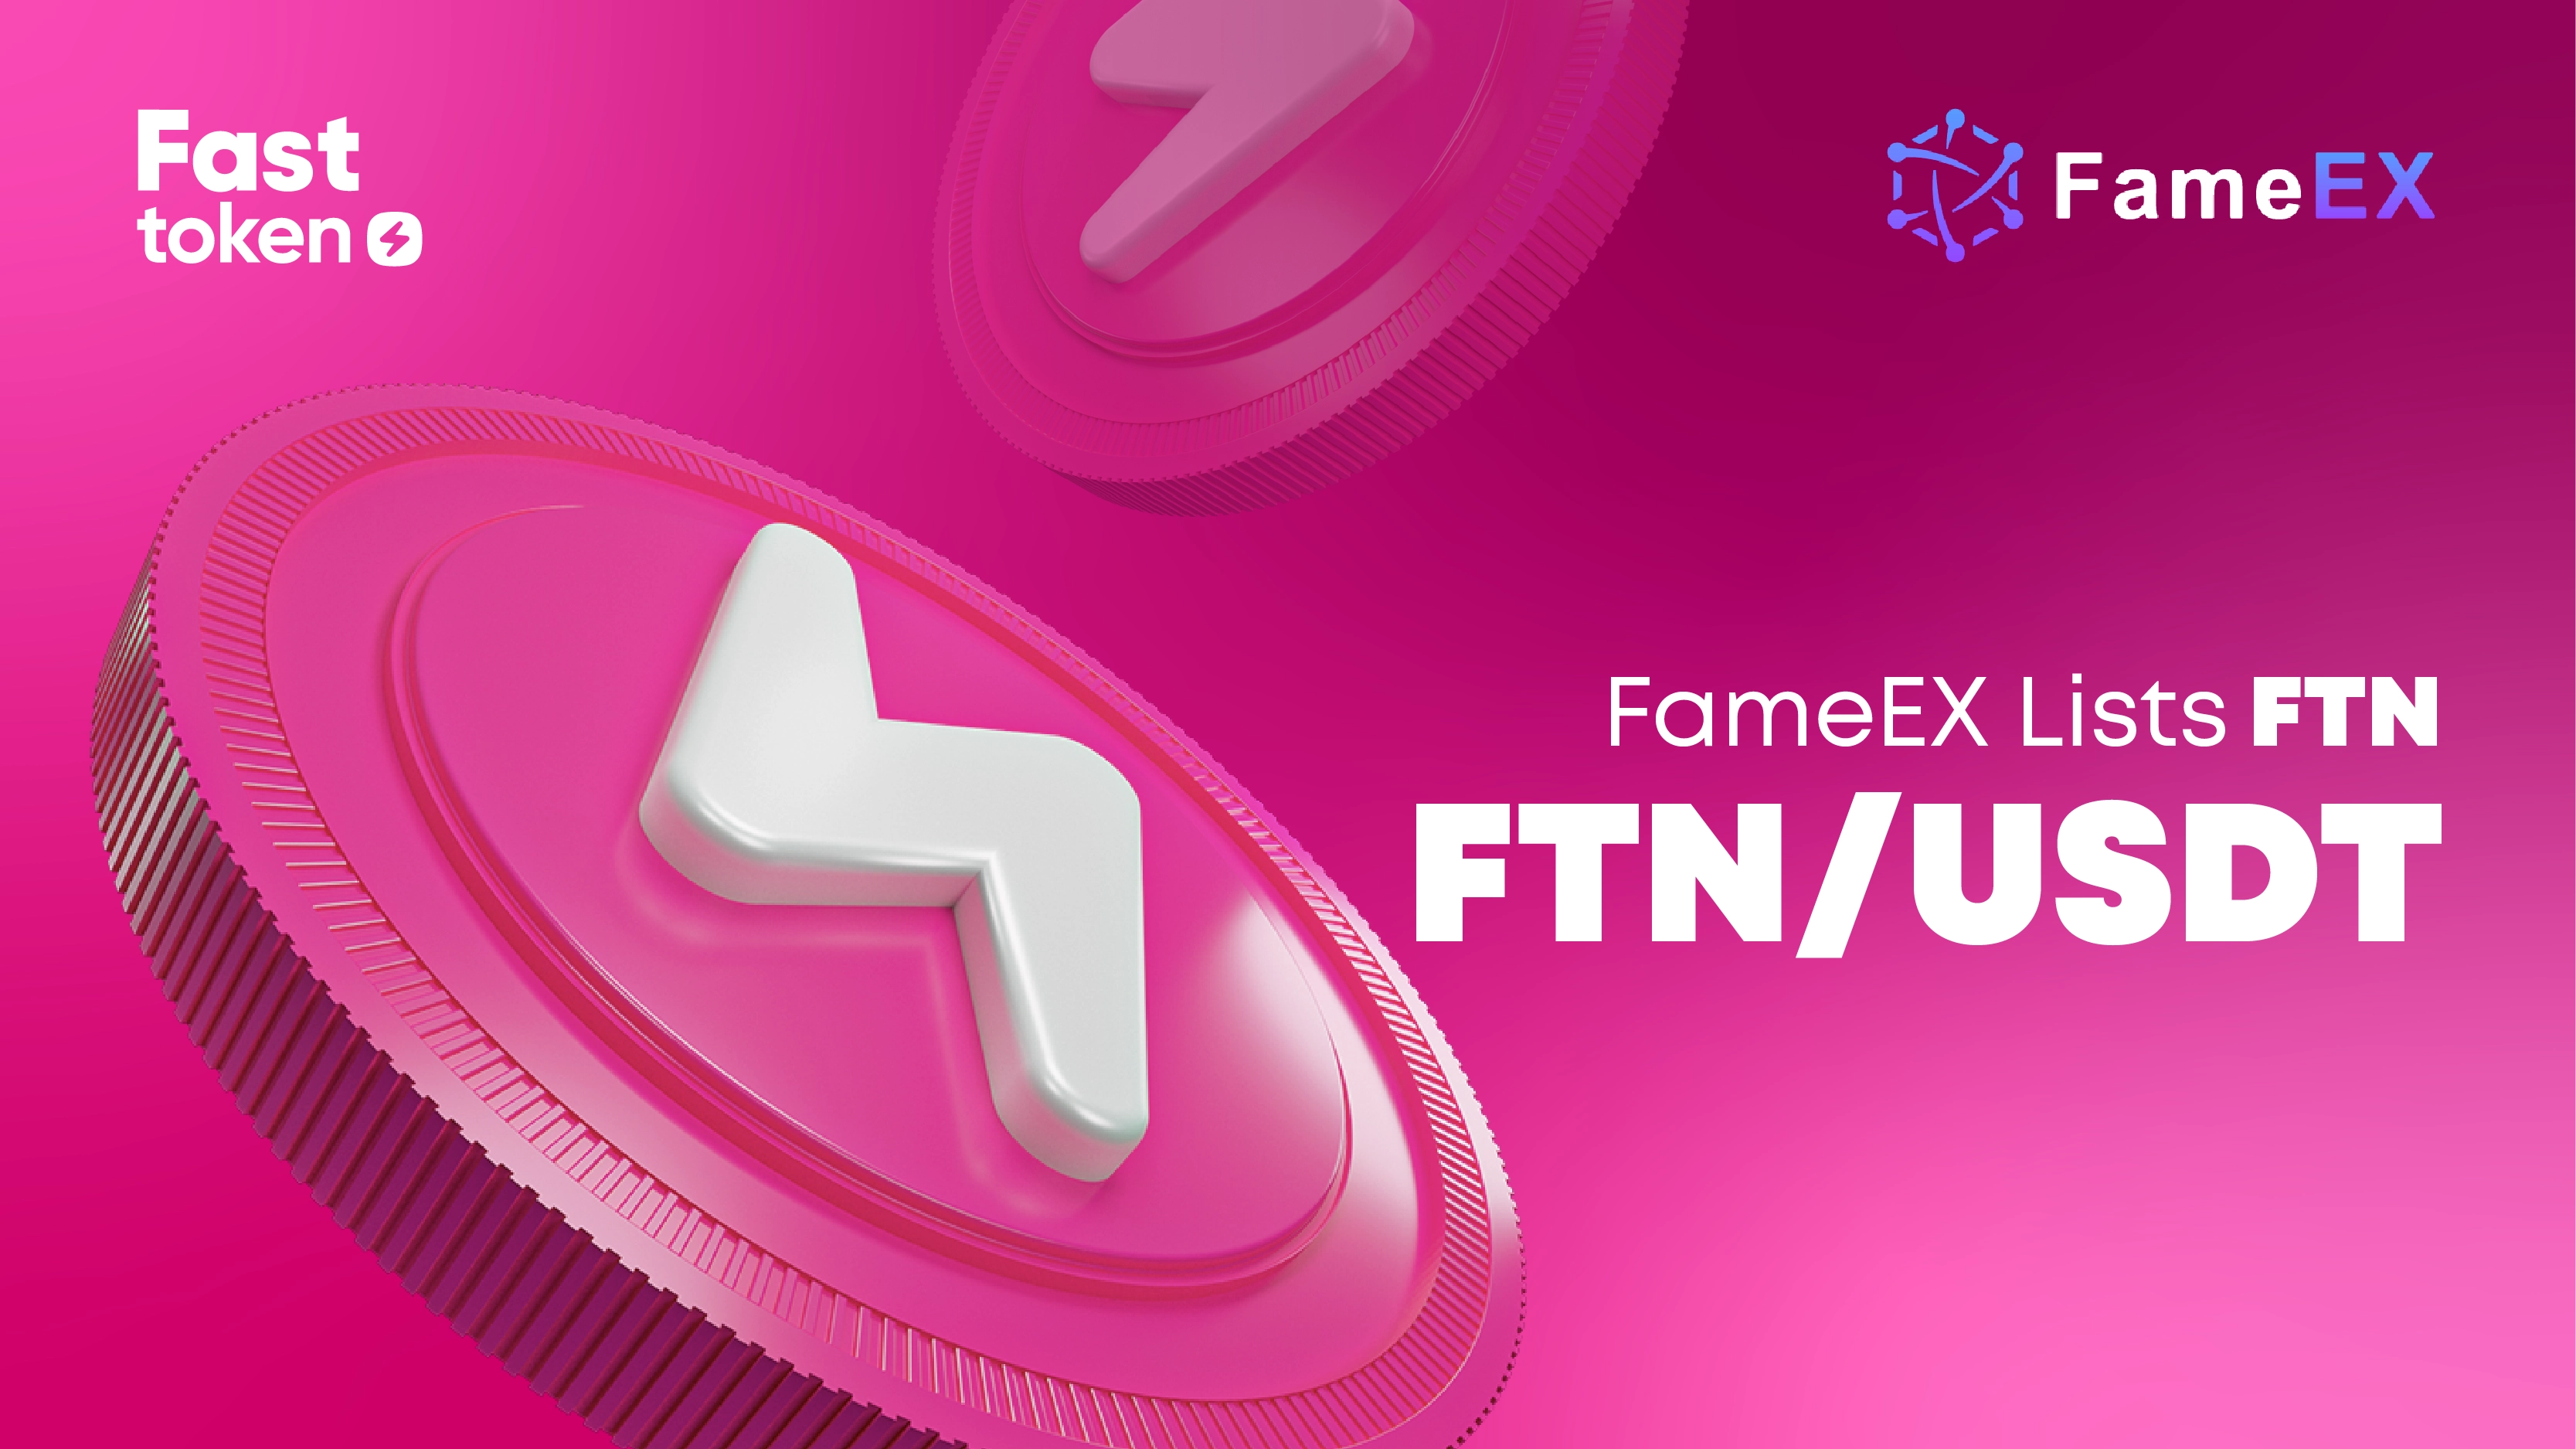 Fasttoken (FTN) agora listada na FameEX